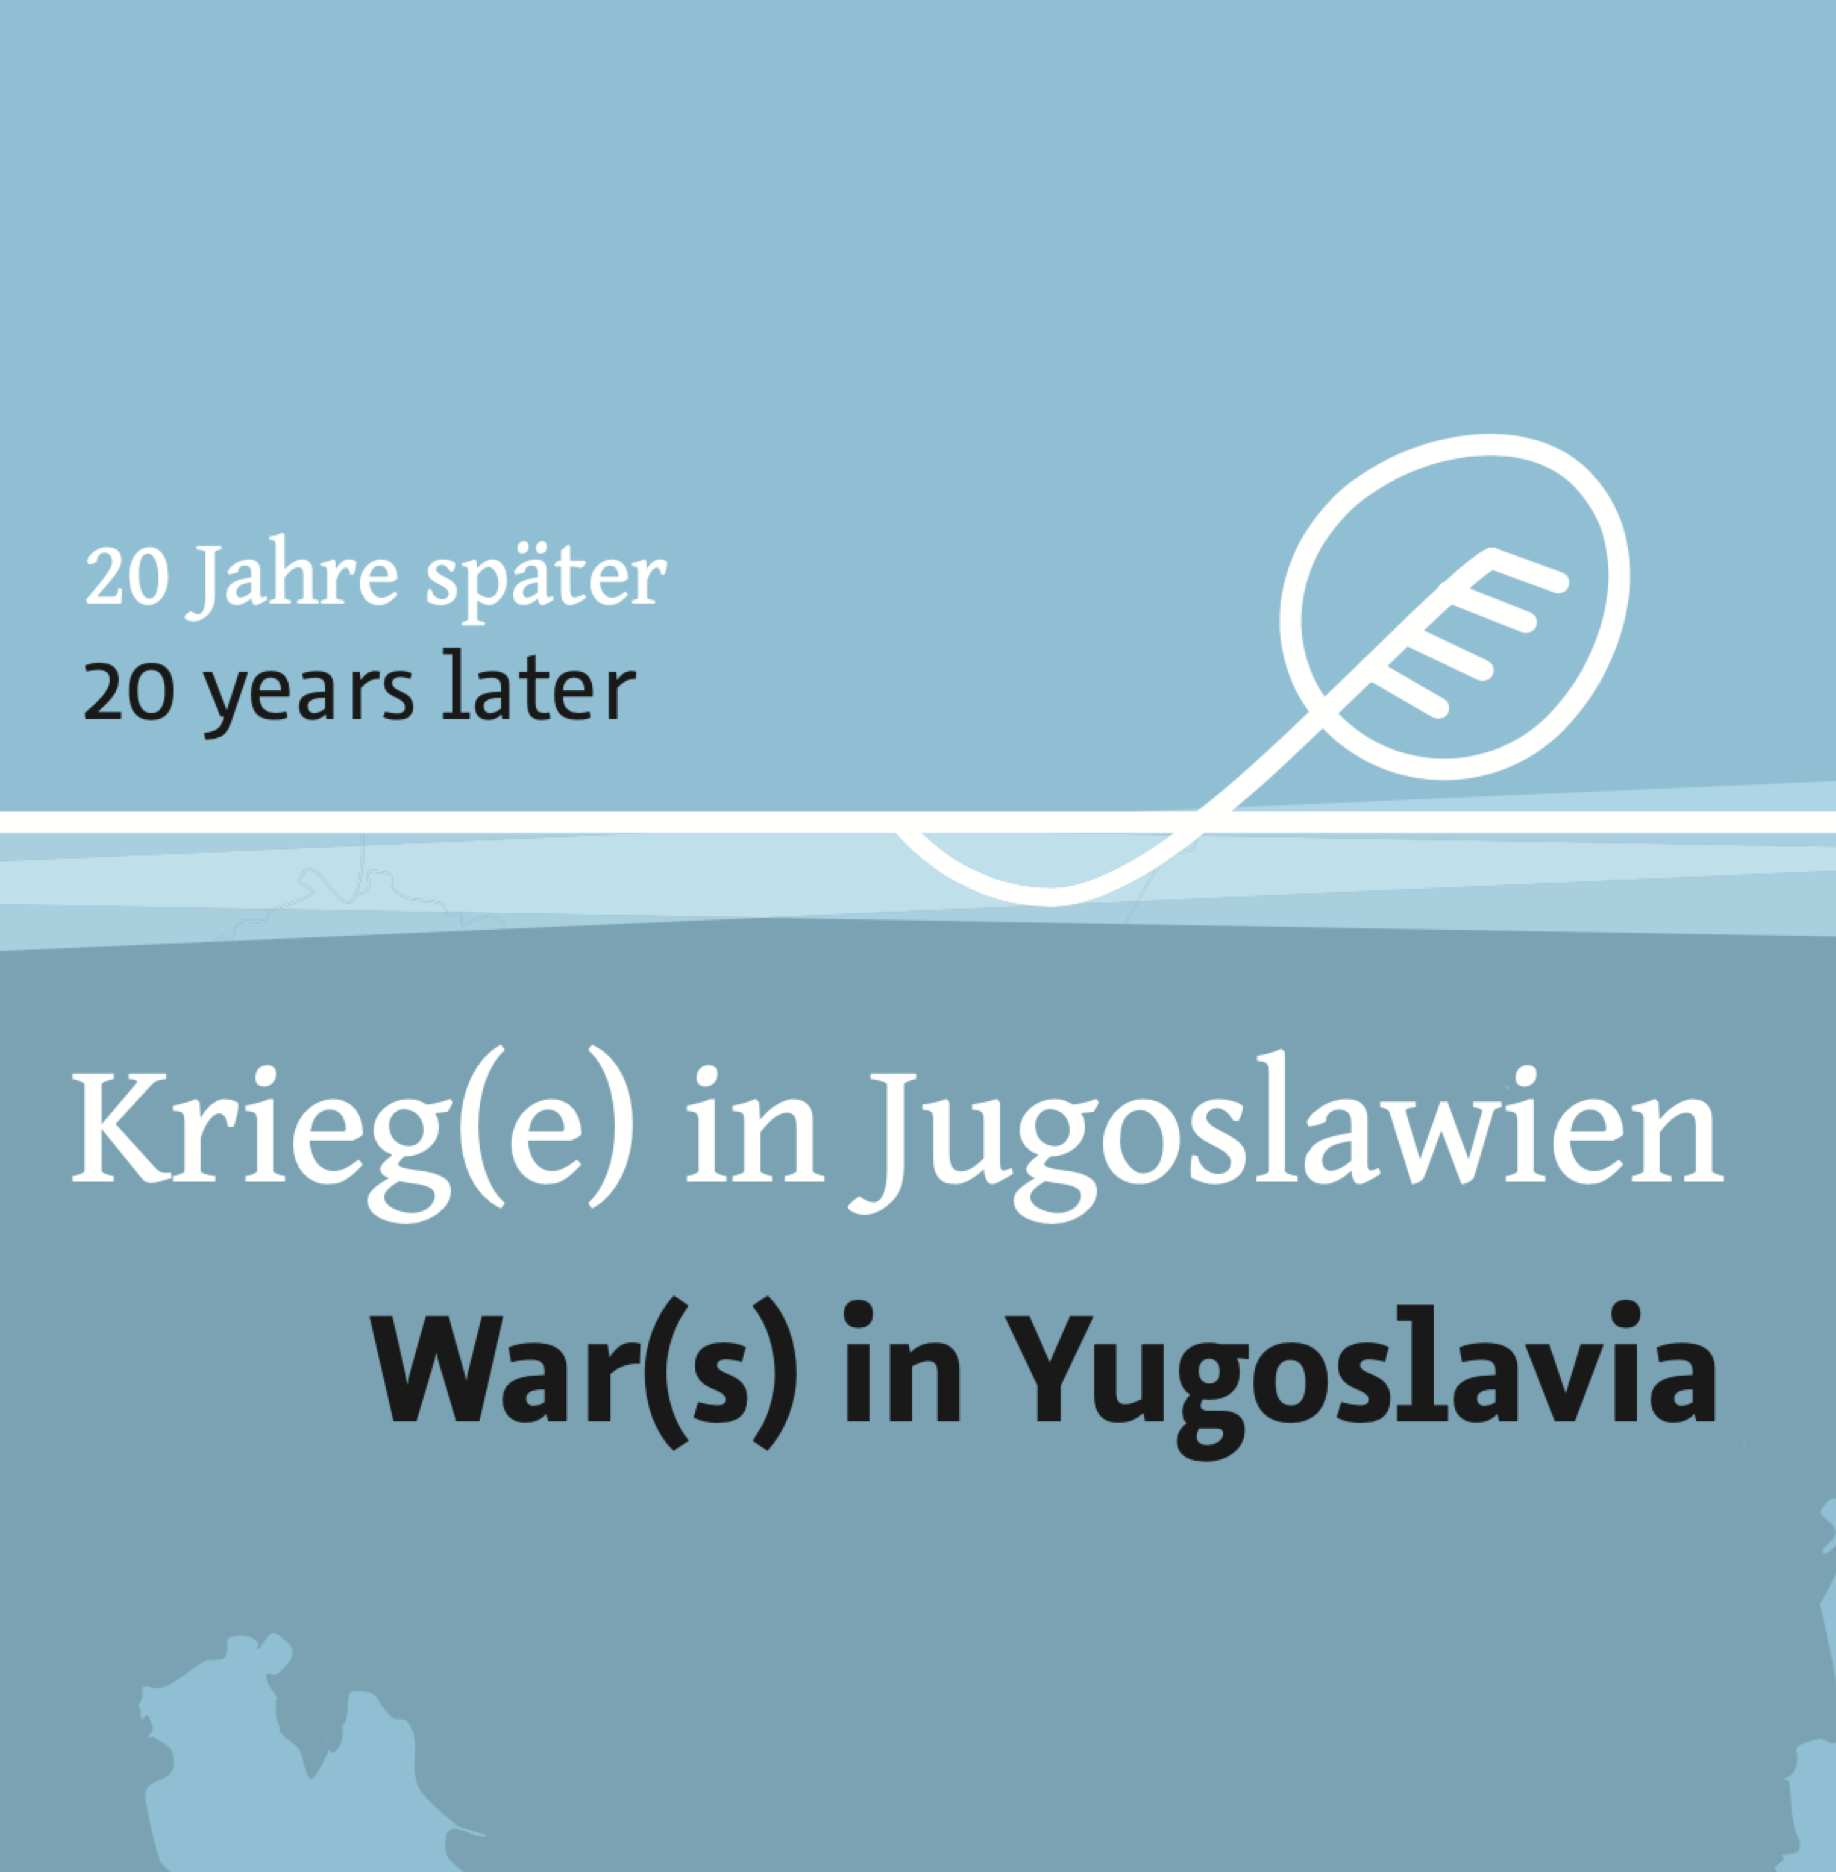 War(s) in Yugoslavia